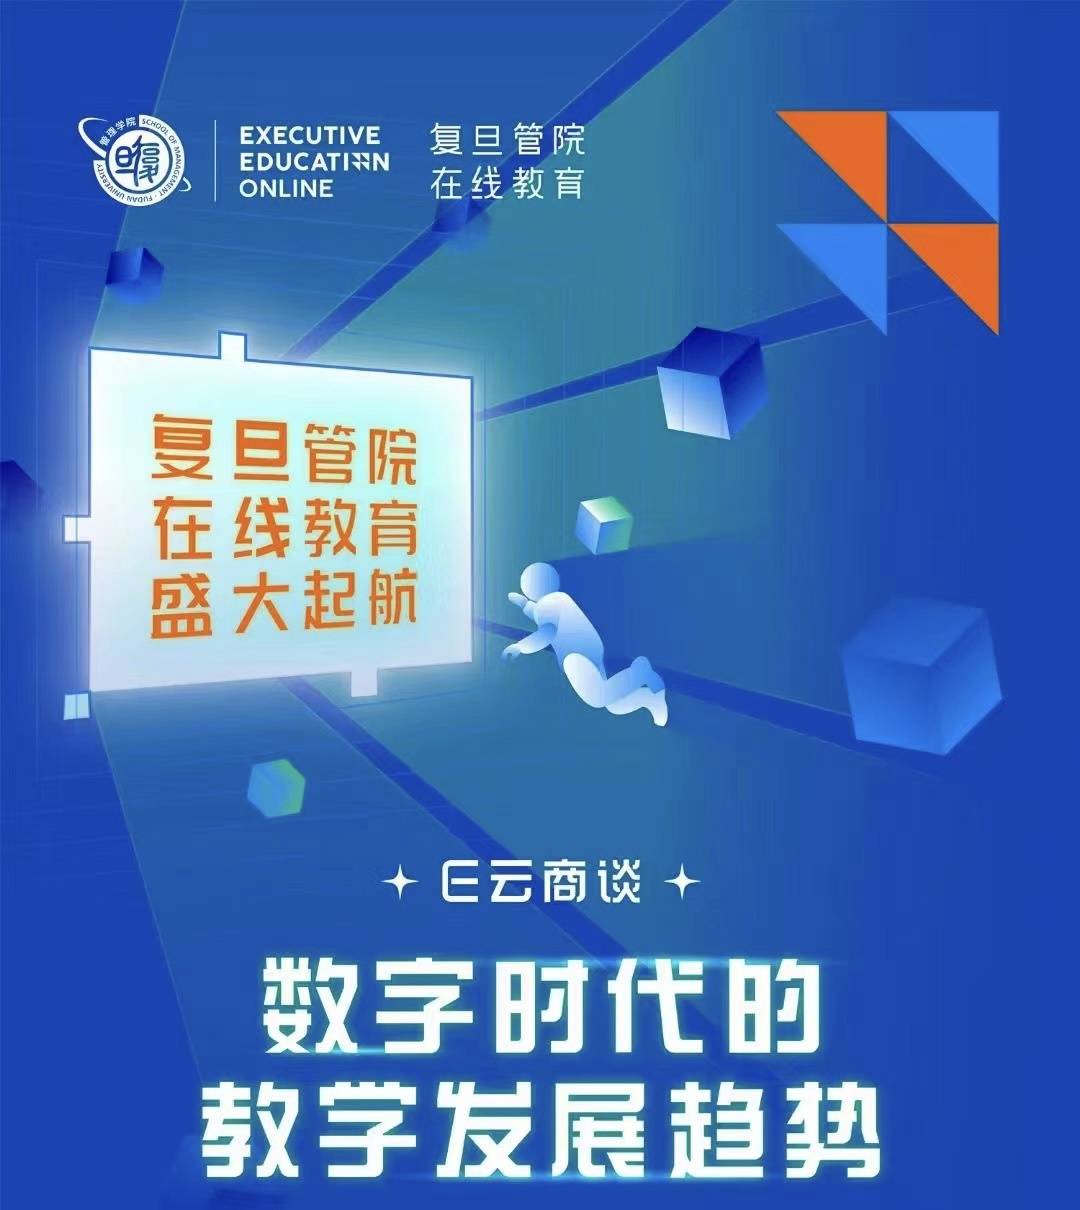 北京大學管理學院麵世幼教網絡平台
，打造出數智今後“景豐純”管理學